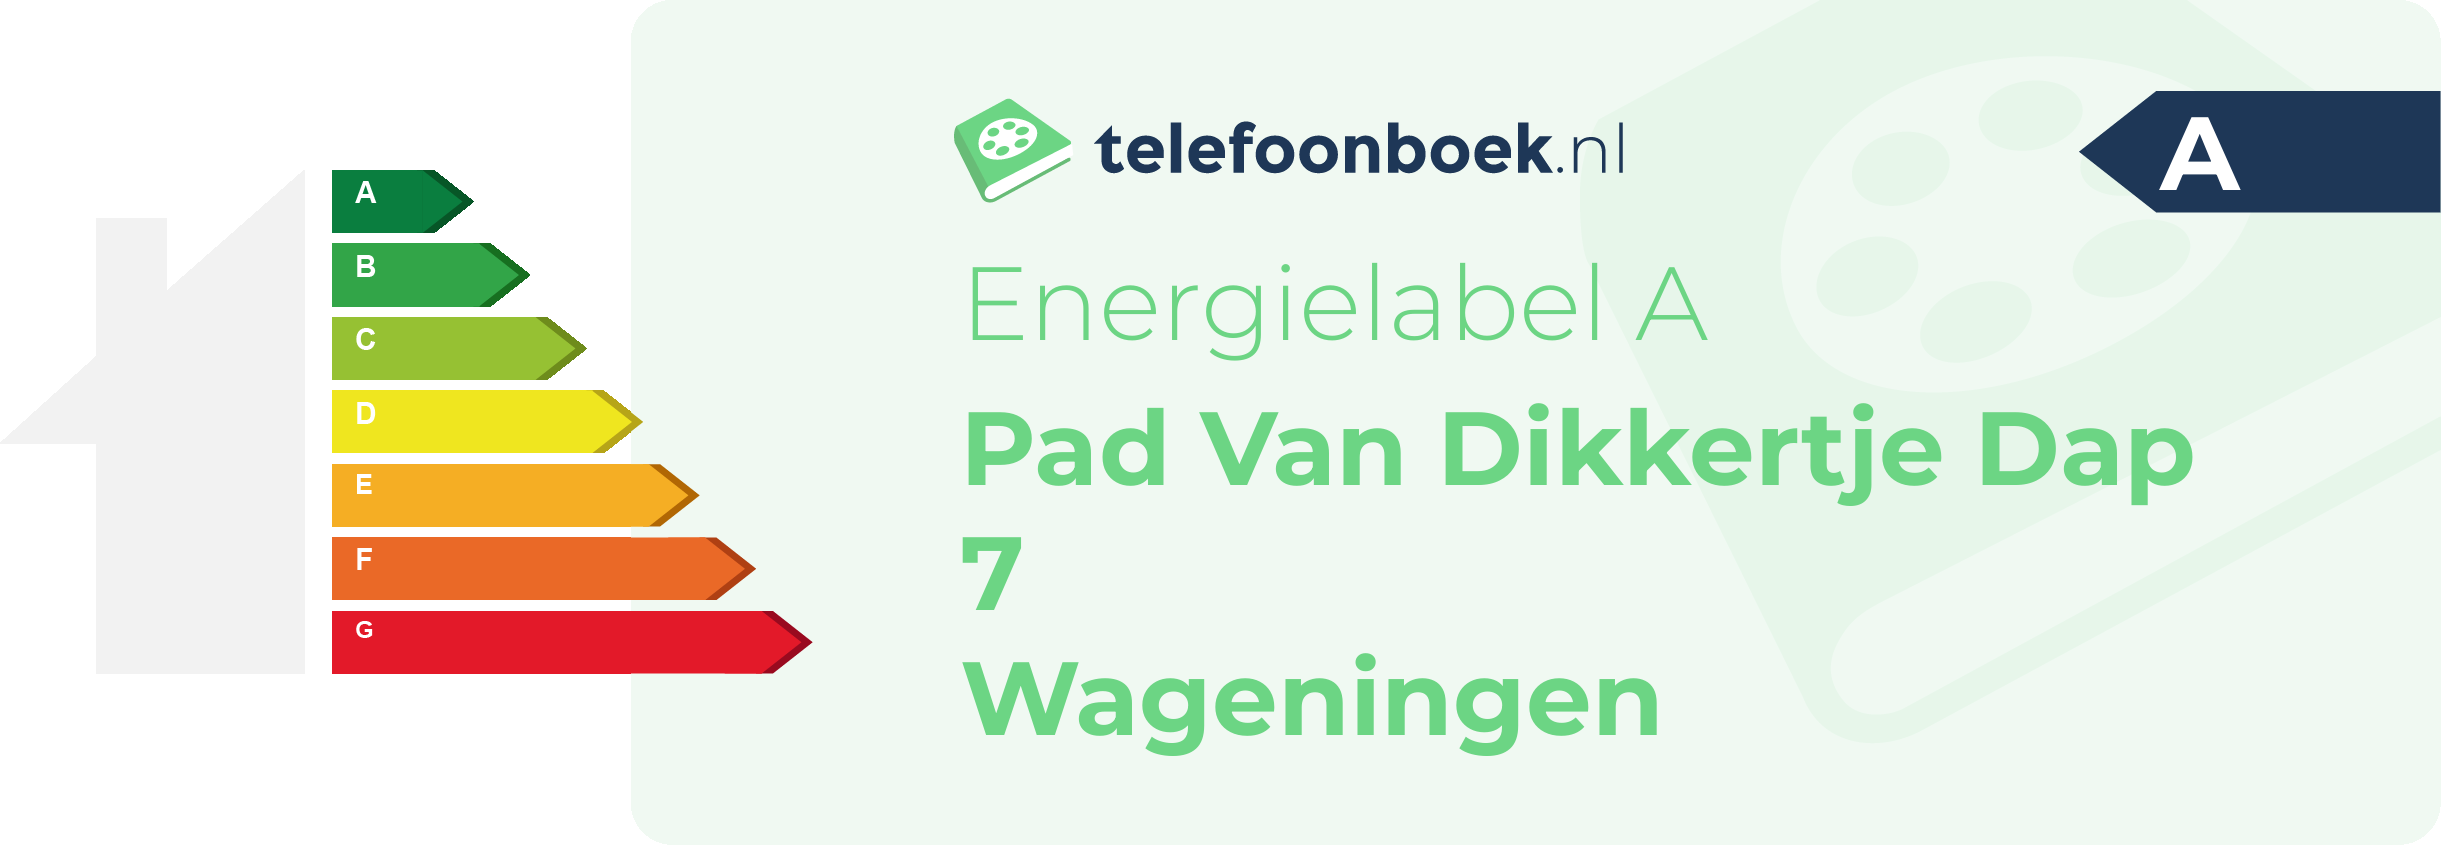 Energielabel Pad Van Dikkertje Dap 7 Wageningen